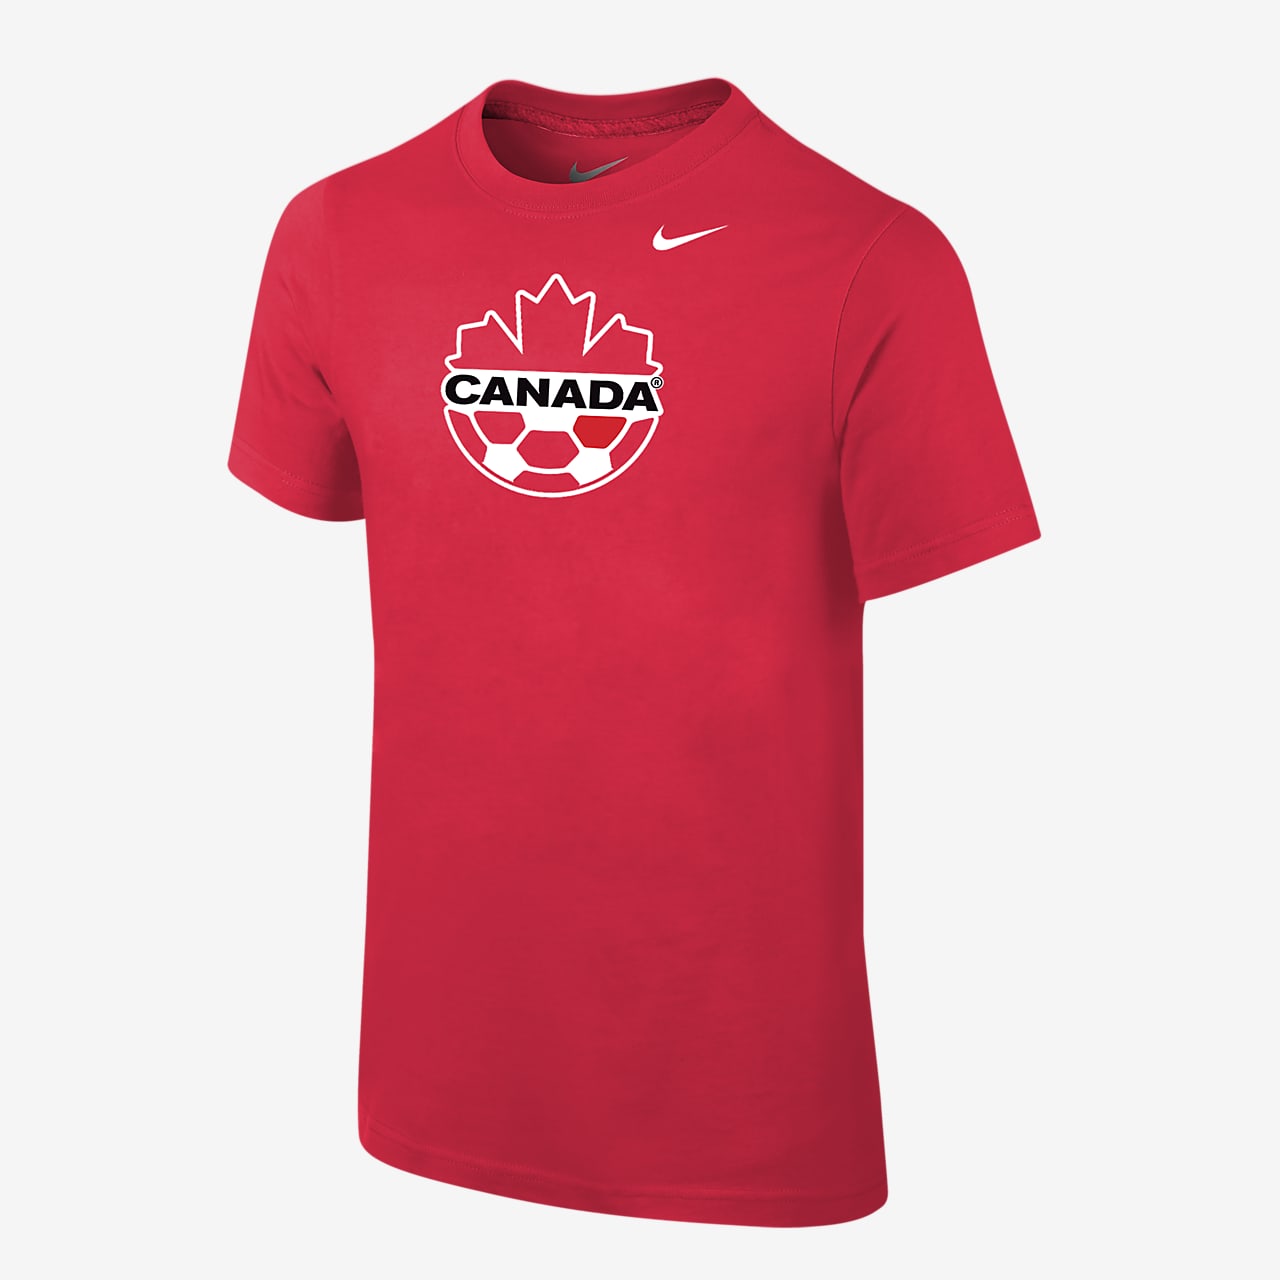 Canada Big Kids' Nike Core T-Shirt.